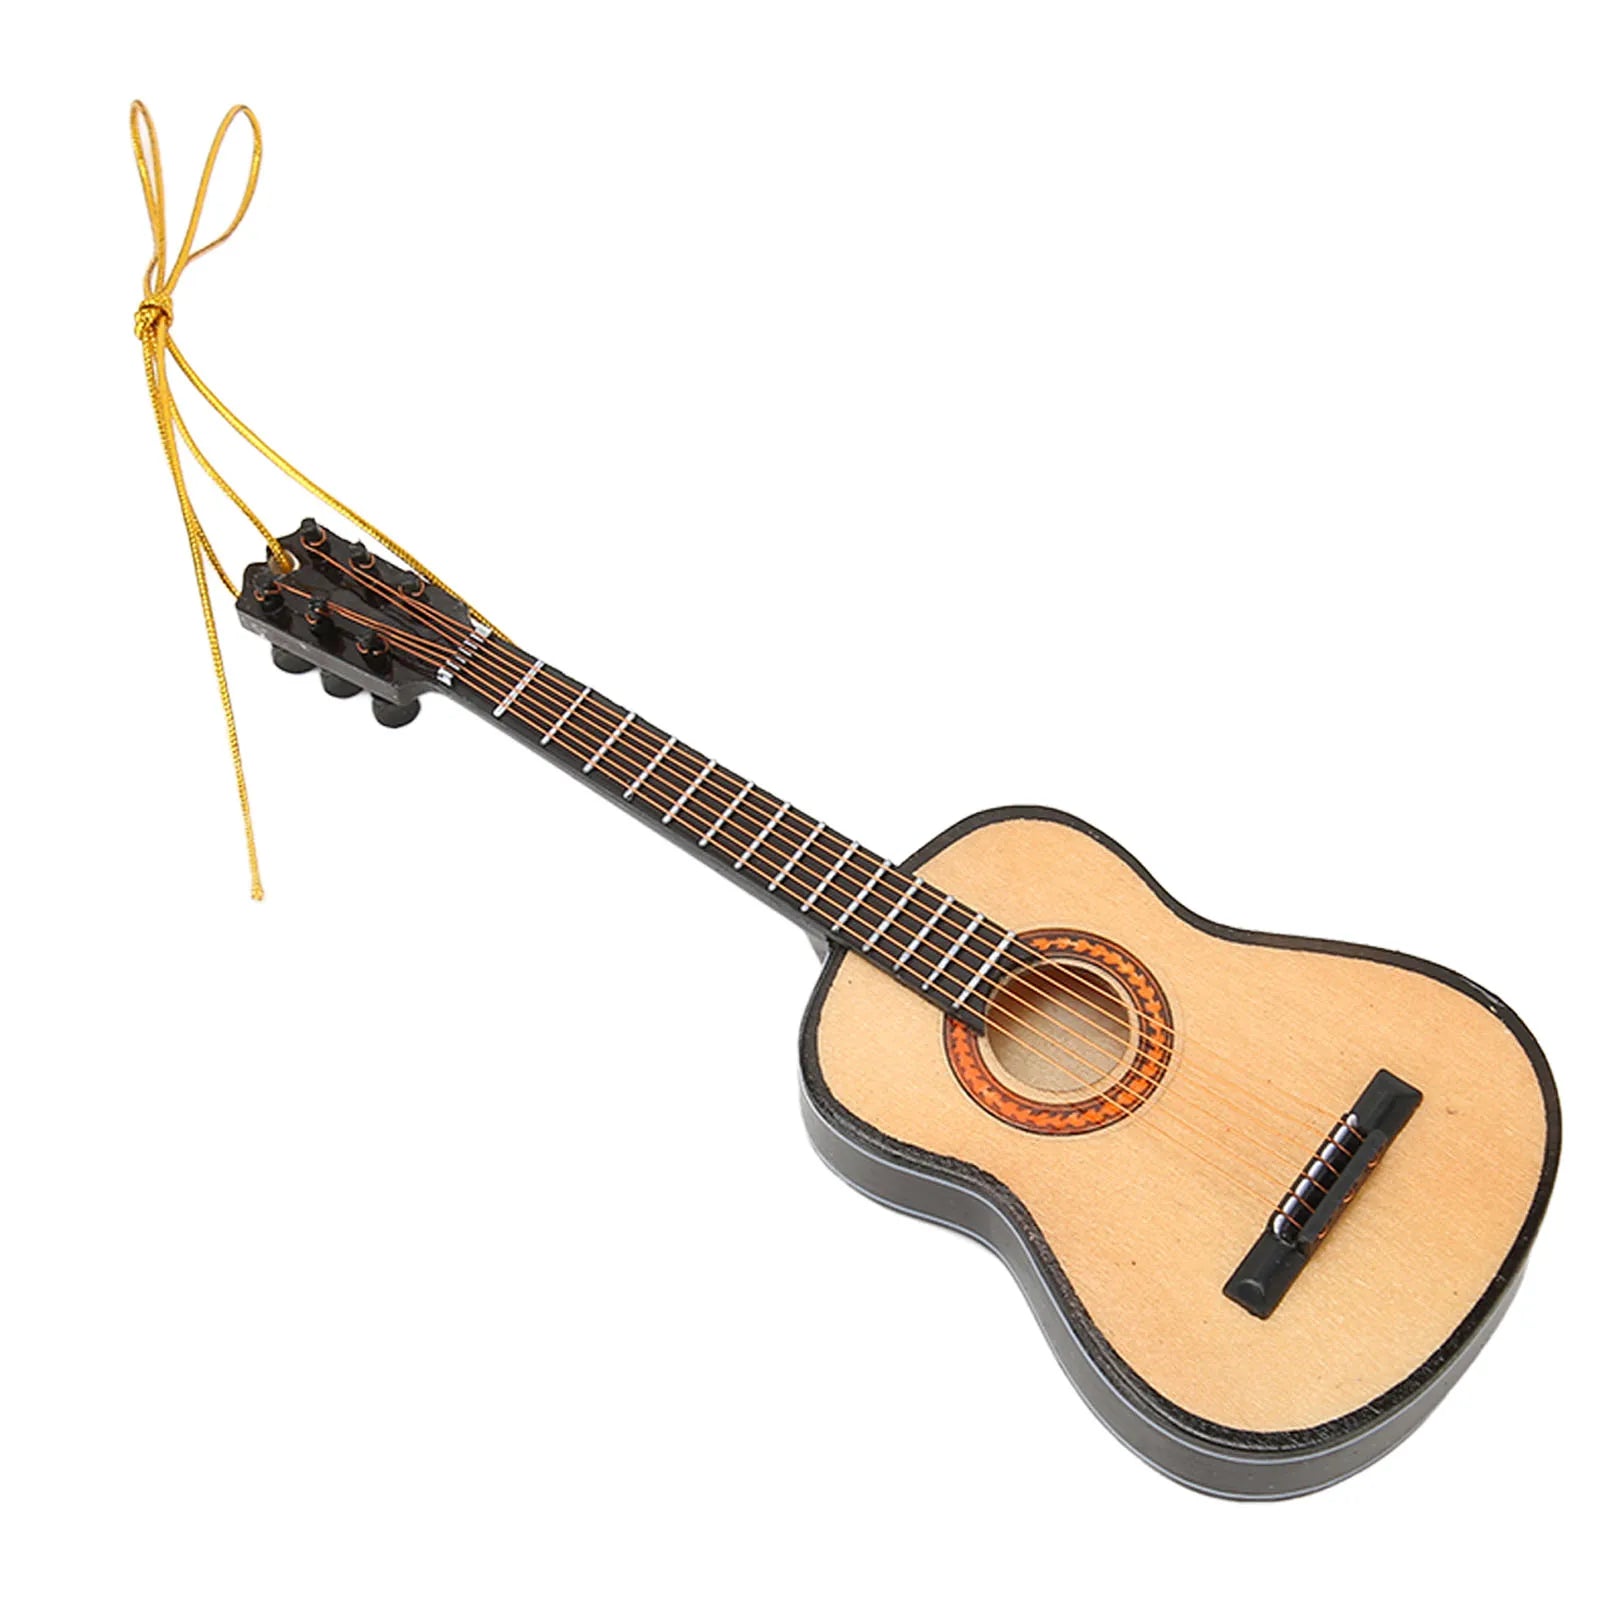 wooden-miniature-guitar-christmas-ornament.jpg